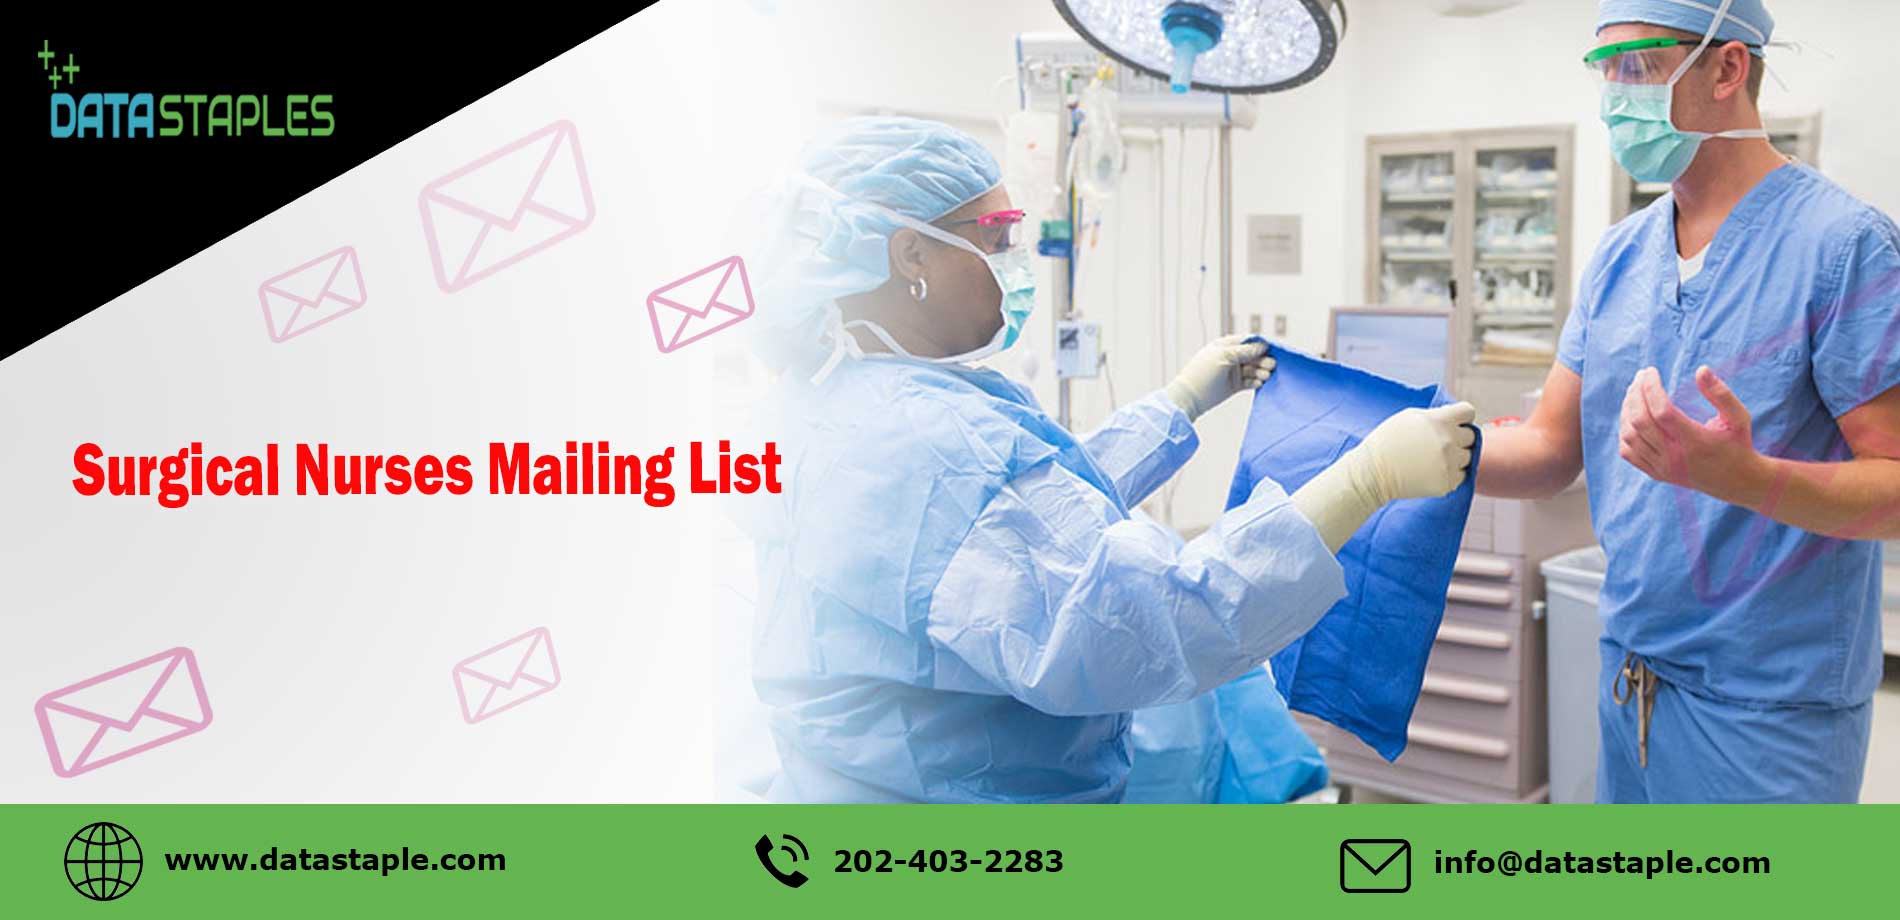 Surgical Nurses Mailing List | DataStaples